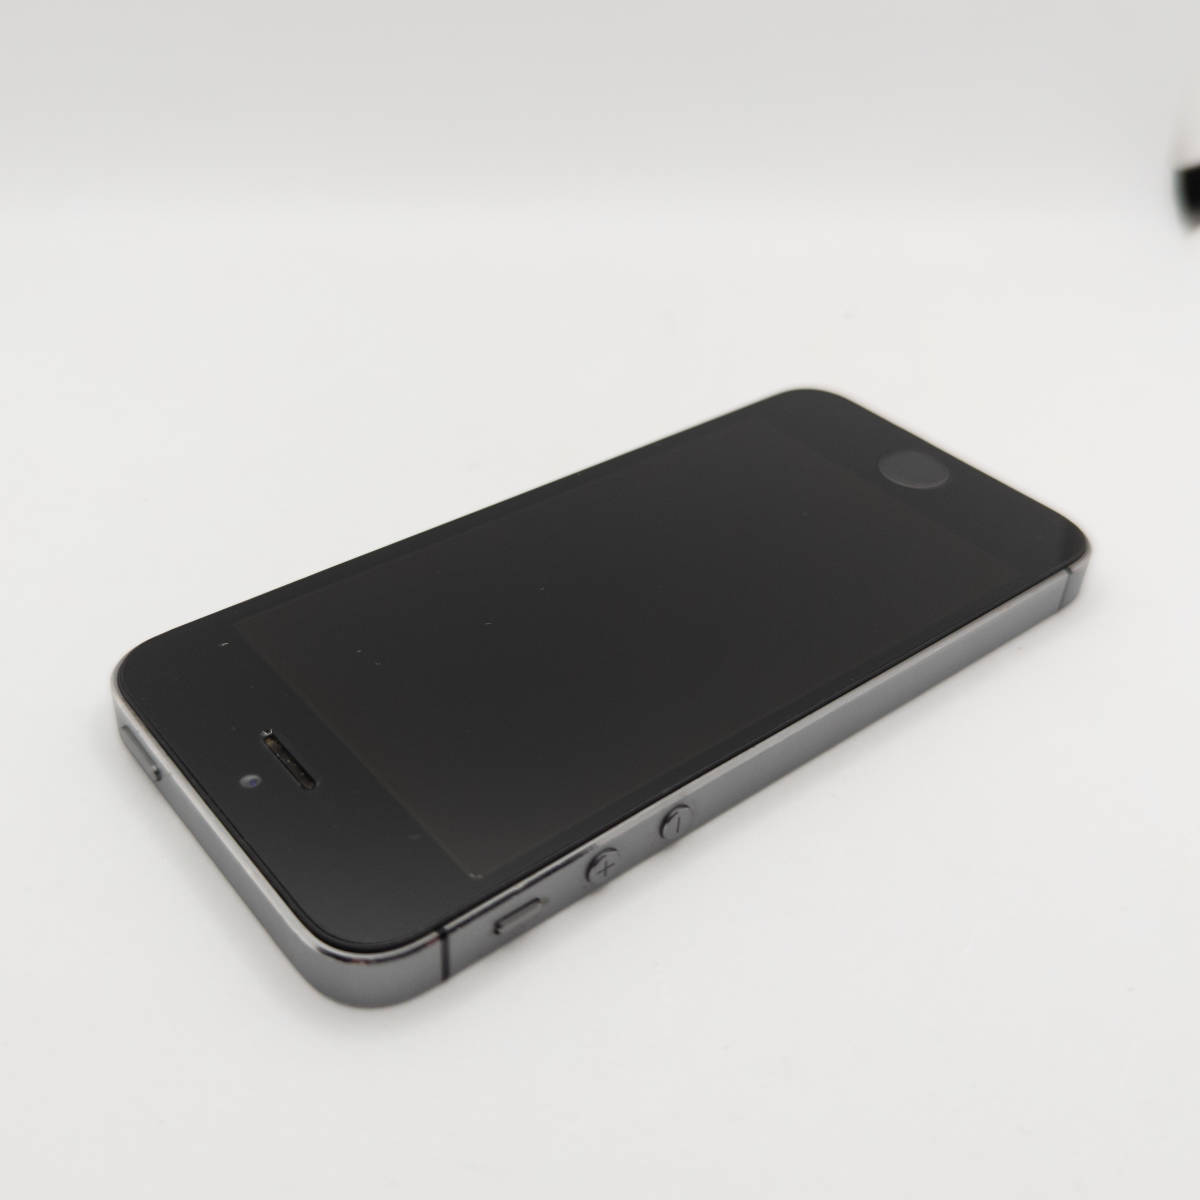 Apple iPhone 5s スペースグレイ 16GB A1453 au 判定〇 アップル アイフォン スマートフォン スマホ 携帯電話 本体 #ST-01747_画像7